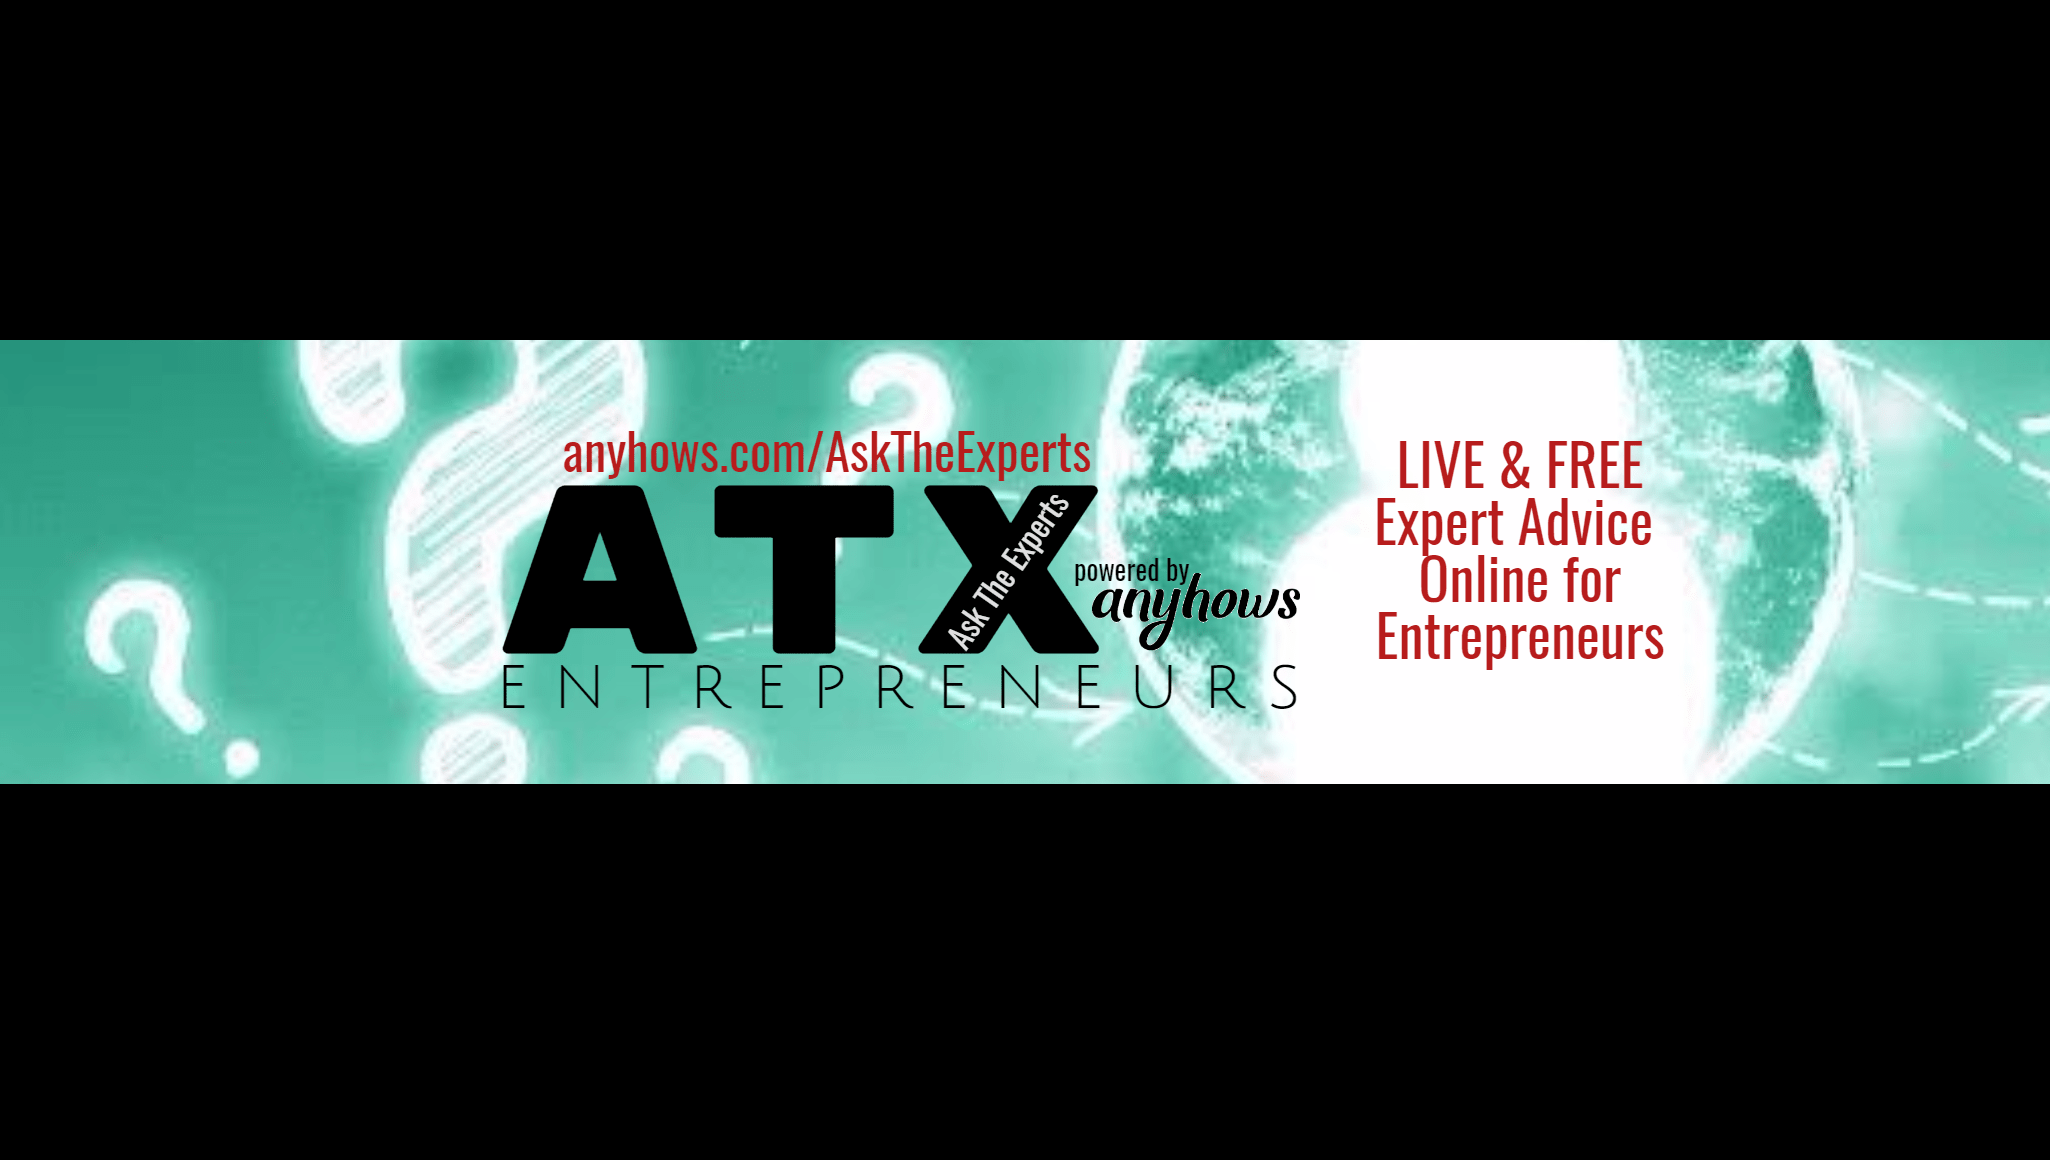 ATX Entrepreneurs Twitter Cover Design 